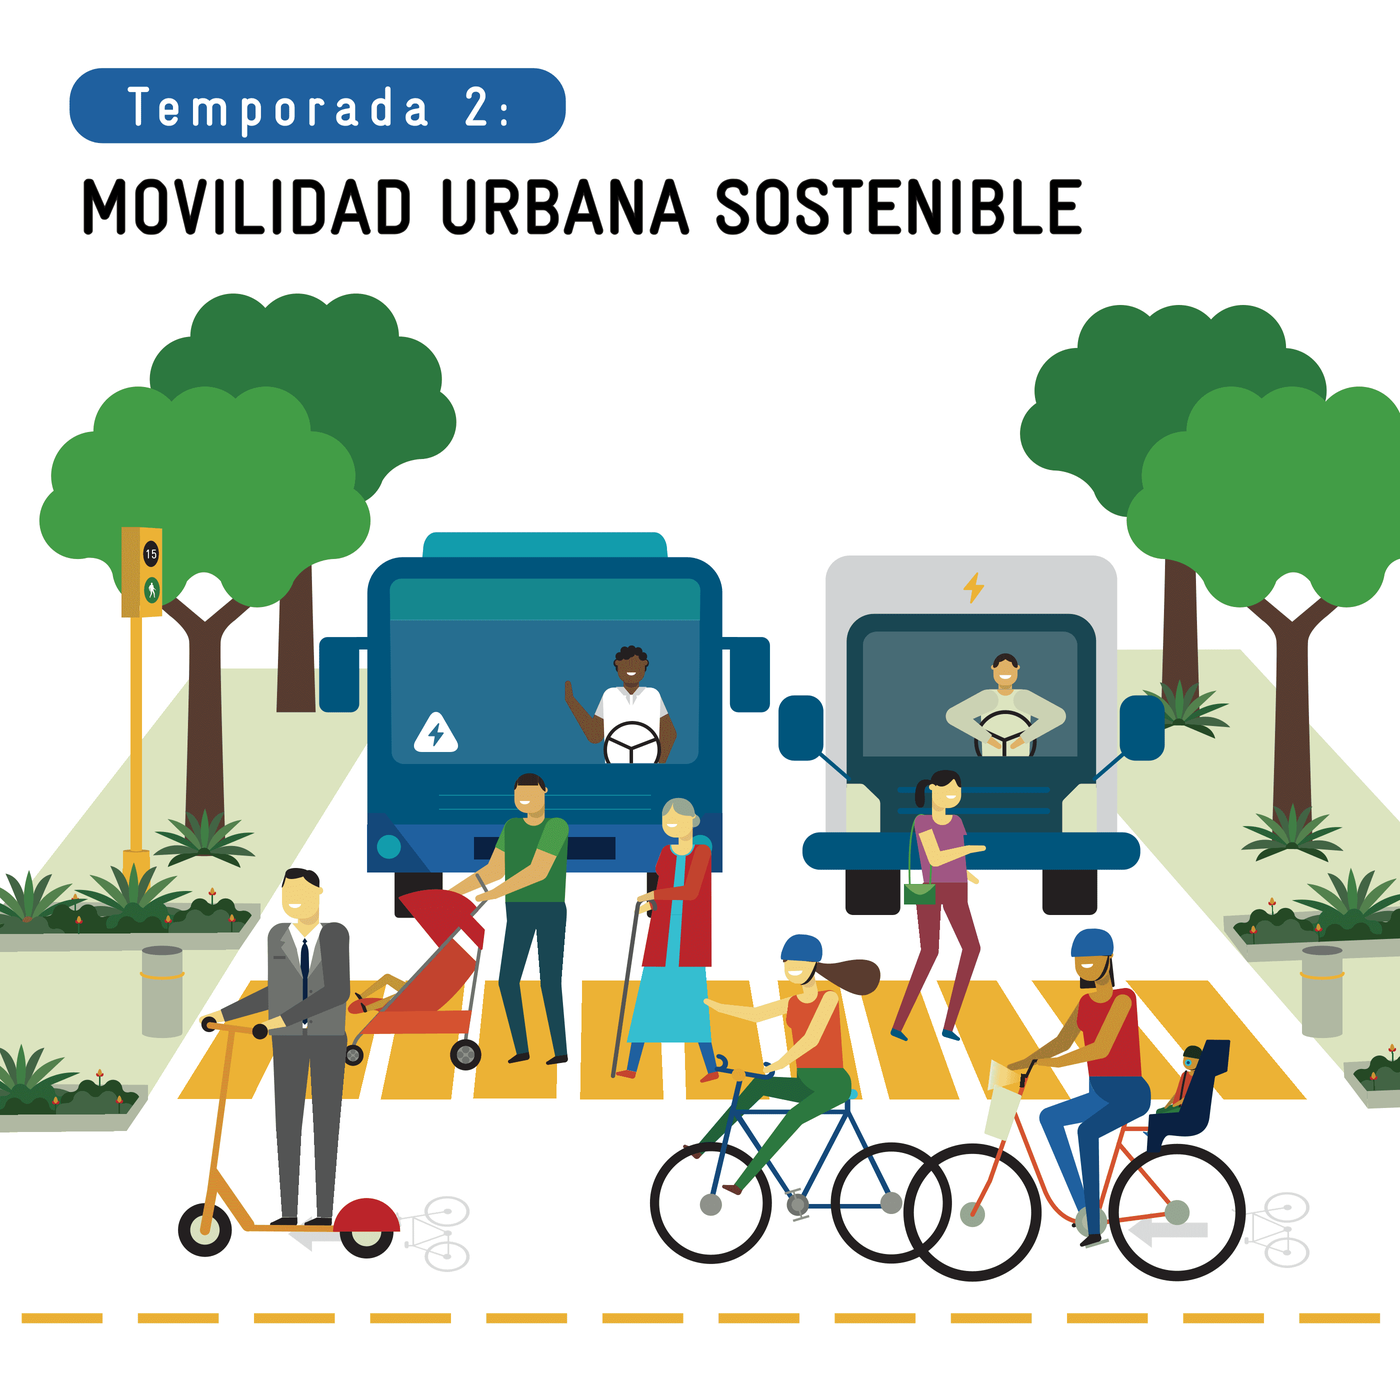 Desarrollo y movilidad sustentable en el Área Metropolitana de Guadalajara